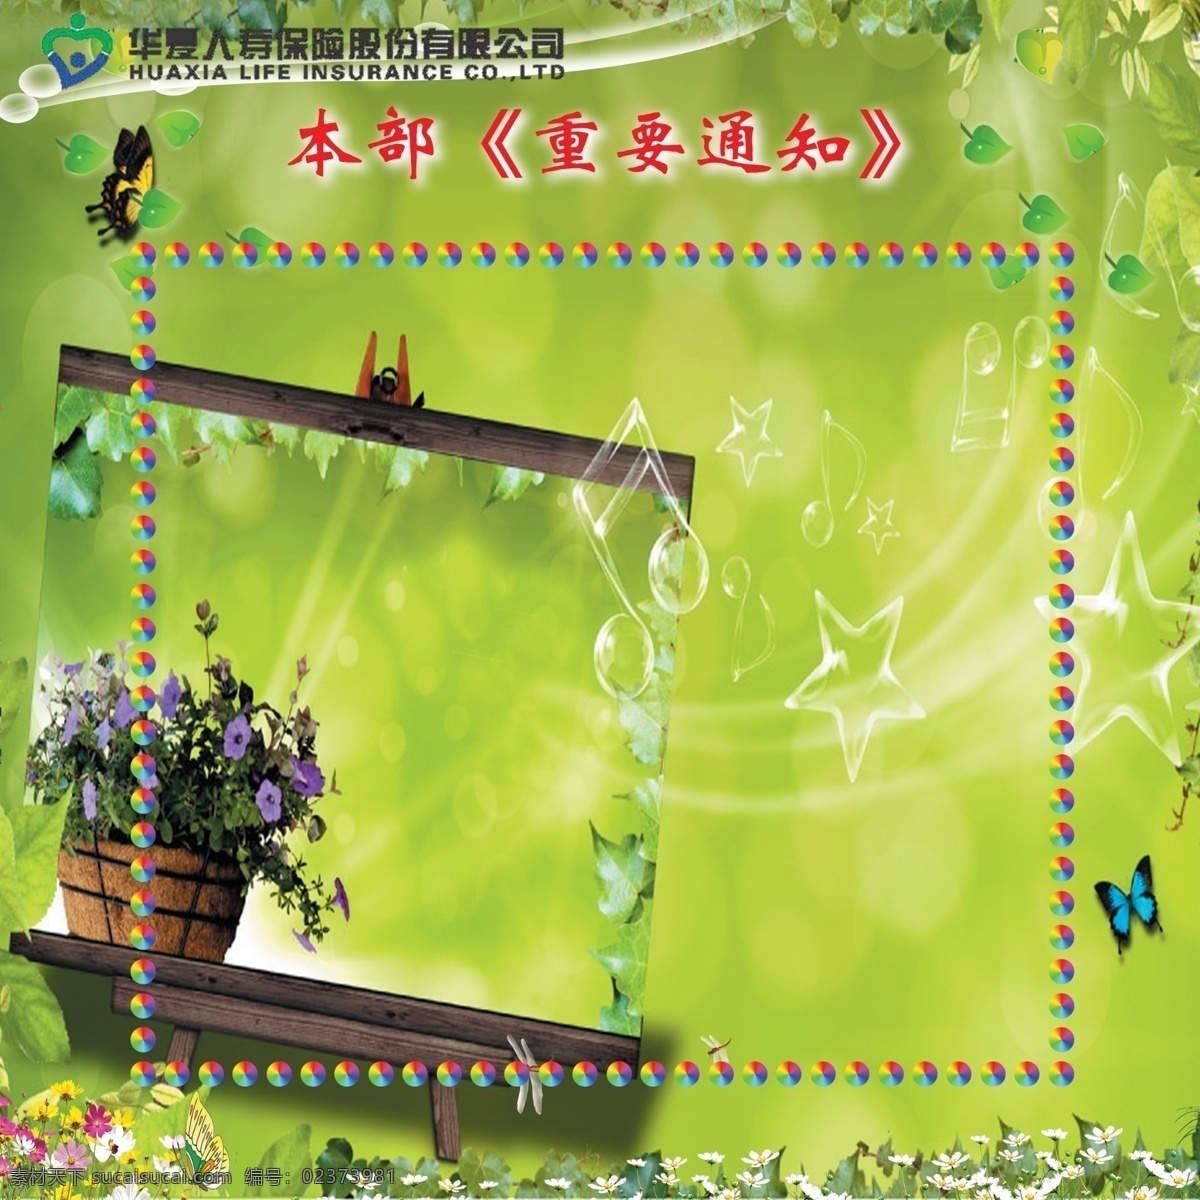 公司 通知 展板 草地 窗台 广告设计模板 蝴蝶 花 绿色 盆栽 蜻蜓 公司通知展板 展板模板 源文件 其他展板设计